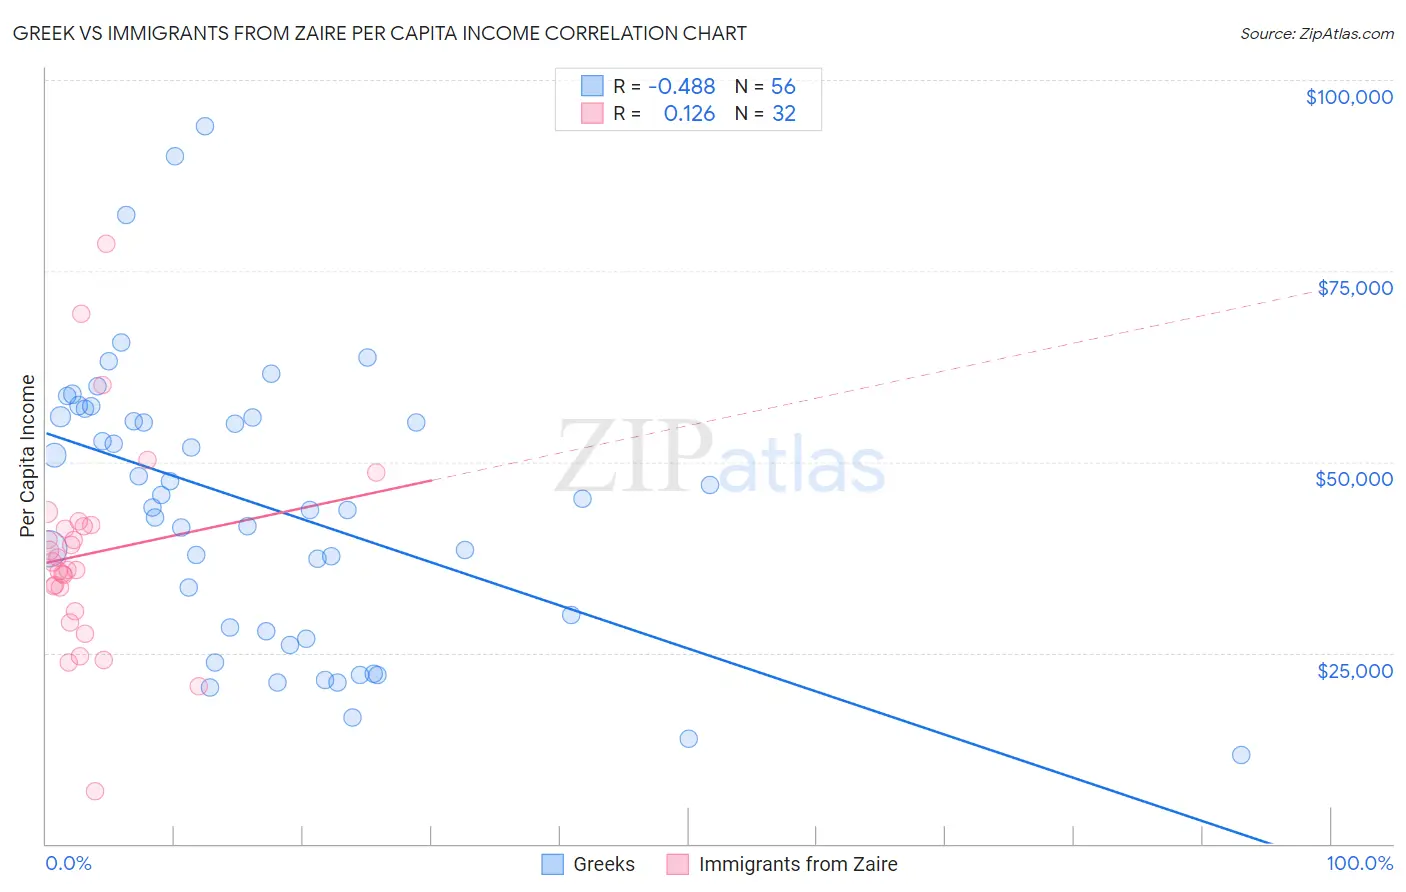 Greek vs Immigrants from Zaire Per Capita Income